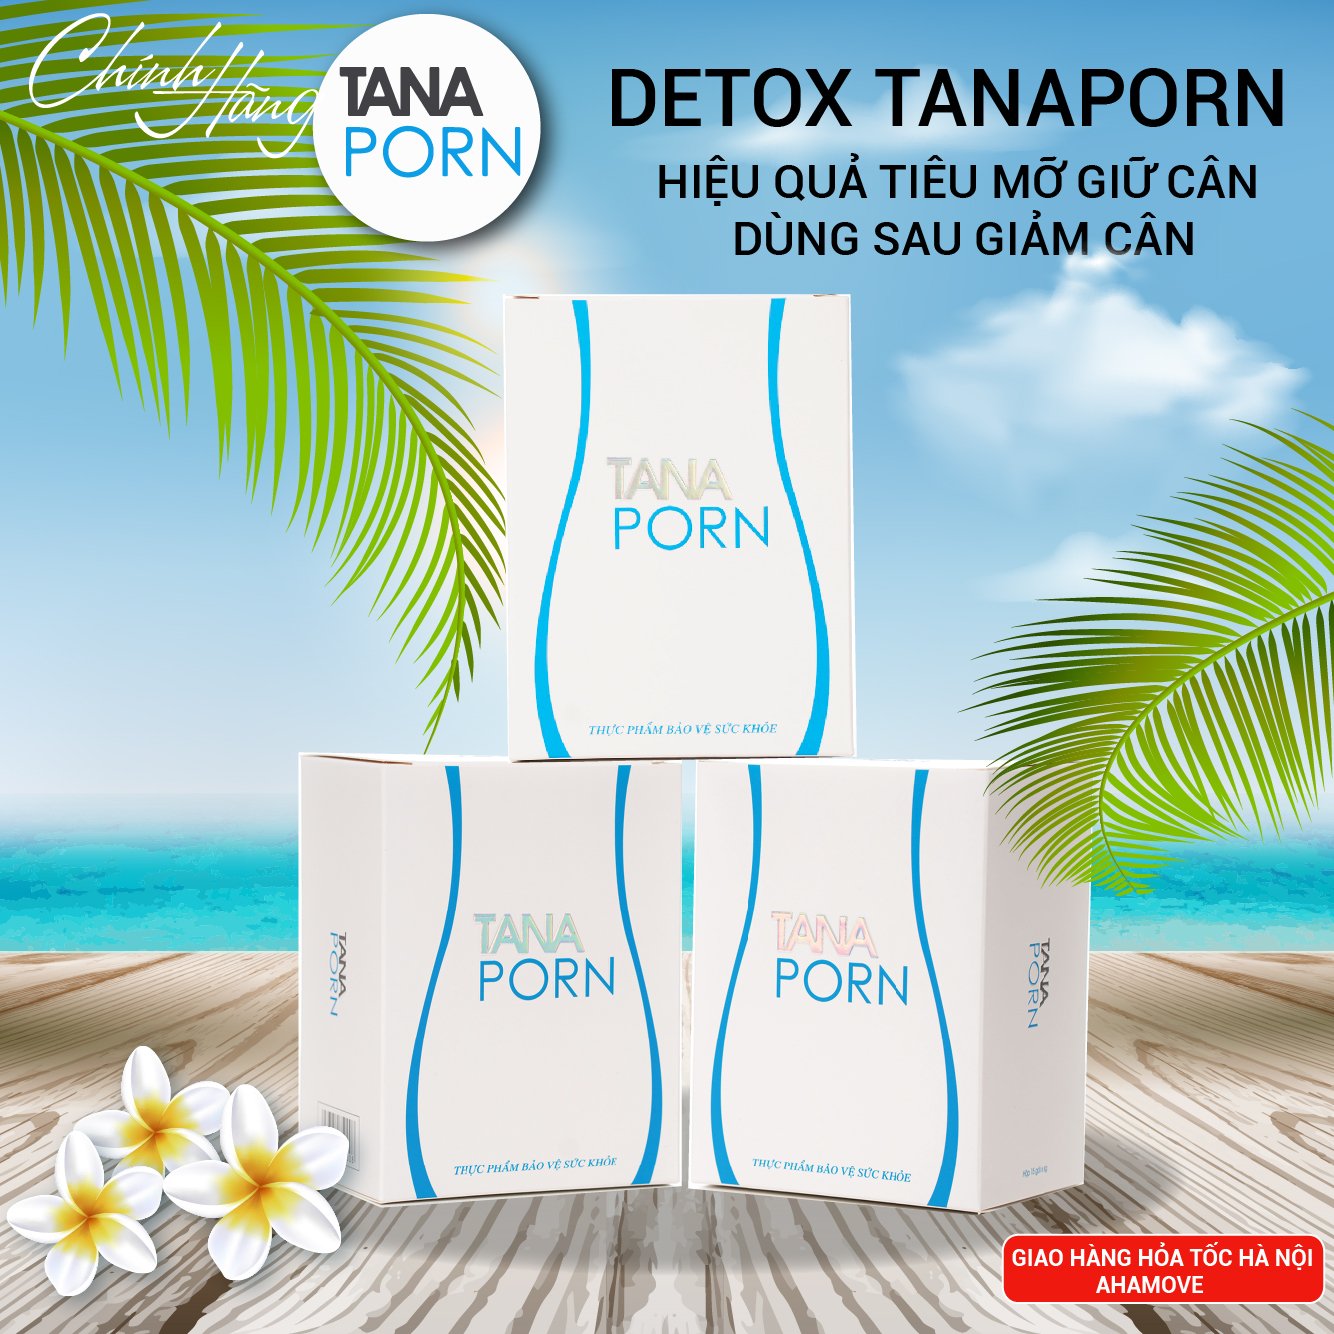 Viên uống detox giảm mỡ giúp giữ cân Tanaporn14 ngày ,thải mỡ hiệu quả